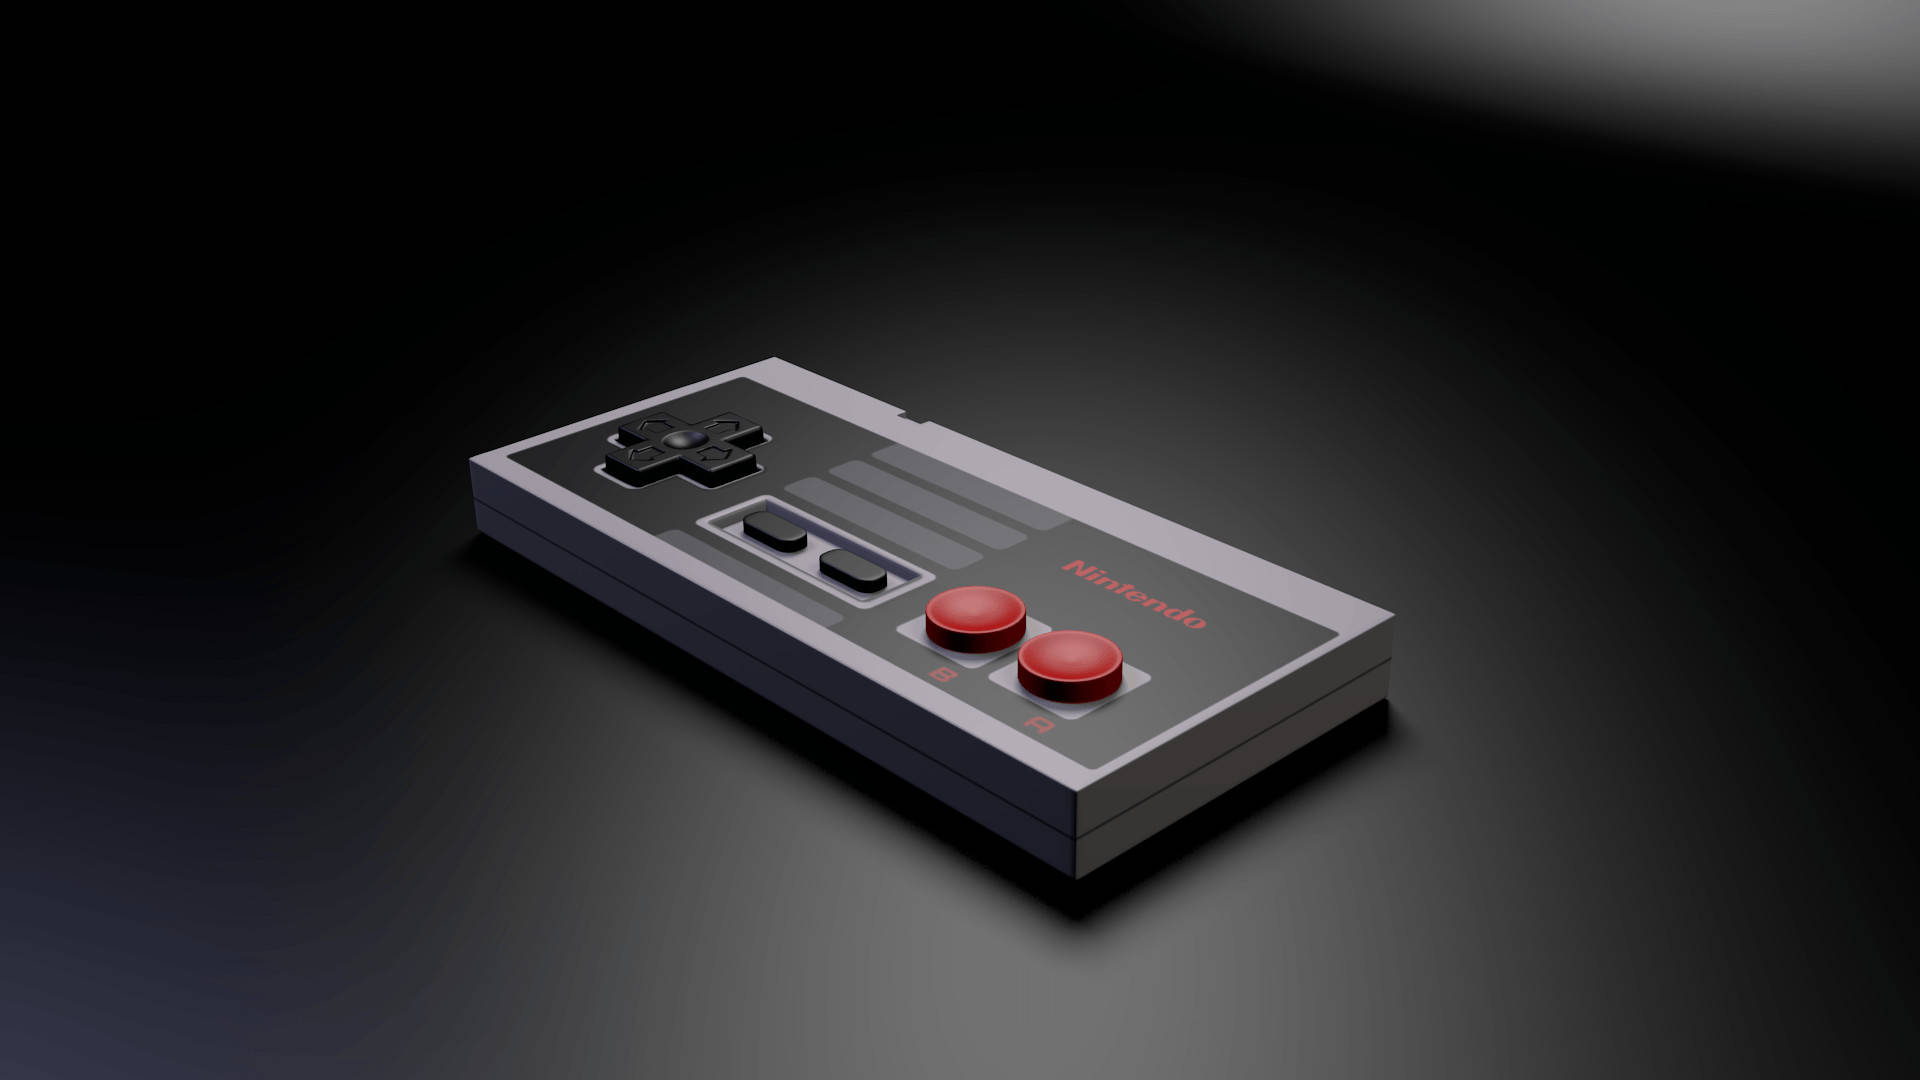 NES-controller sort og hvid. Wallpaper